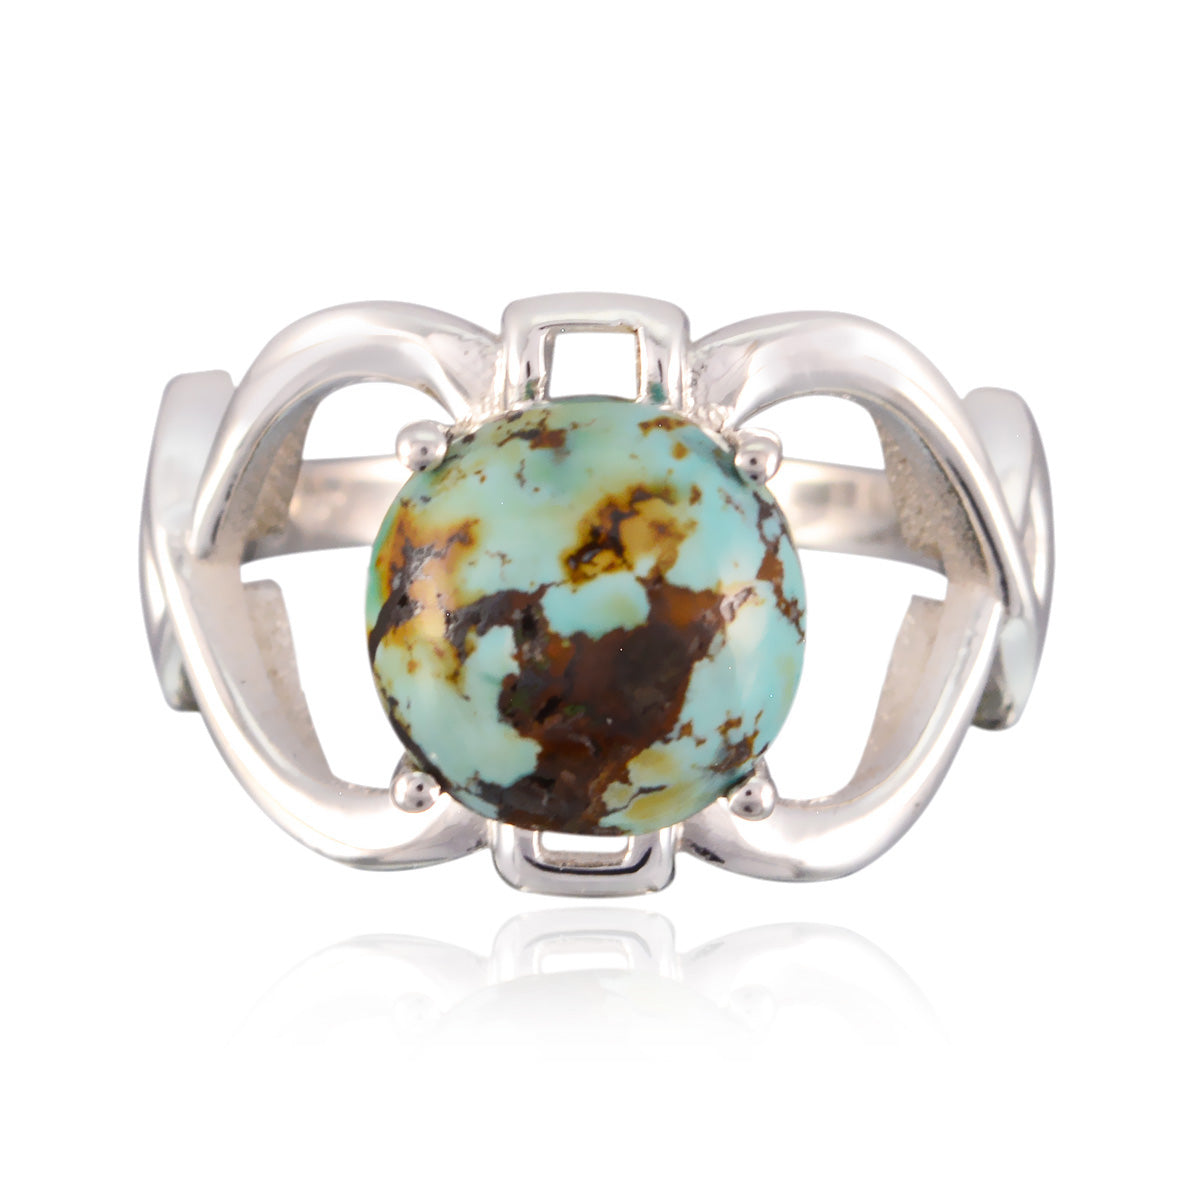 Riyo Ravishing Gemstones Turquoise Silver Ring Peoples Jewelry